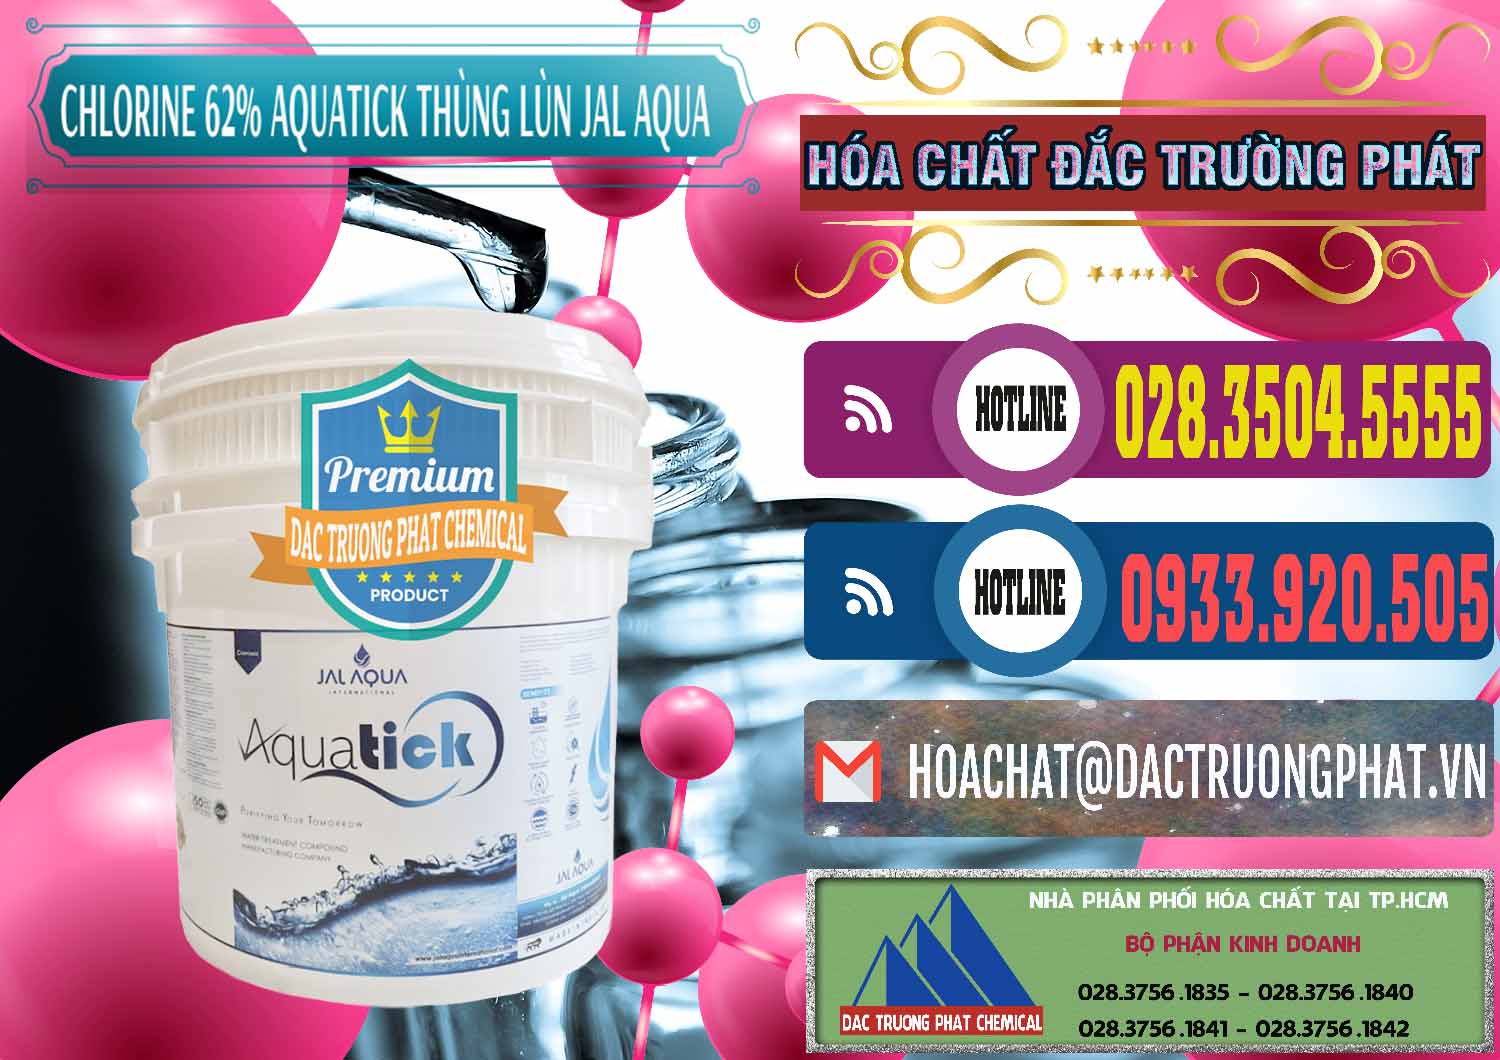 Nơi chuyên nhập khẩu & bán Chlorine – Clorin 62% Aquatick Thùng Lùn Jal Aqua Ấn Độ India - 0238 - Đơn vị cung cấp ( phân phối ) hóa chất tại TP.HCM - muabanhoachat.com.vn